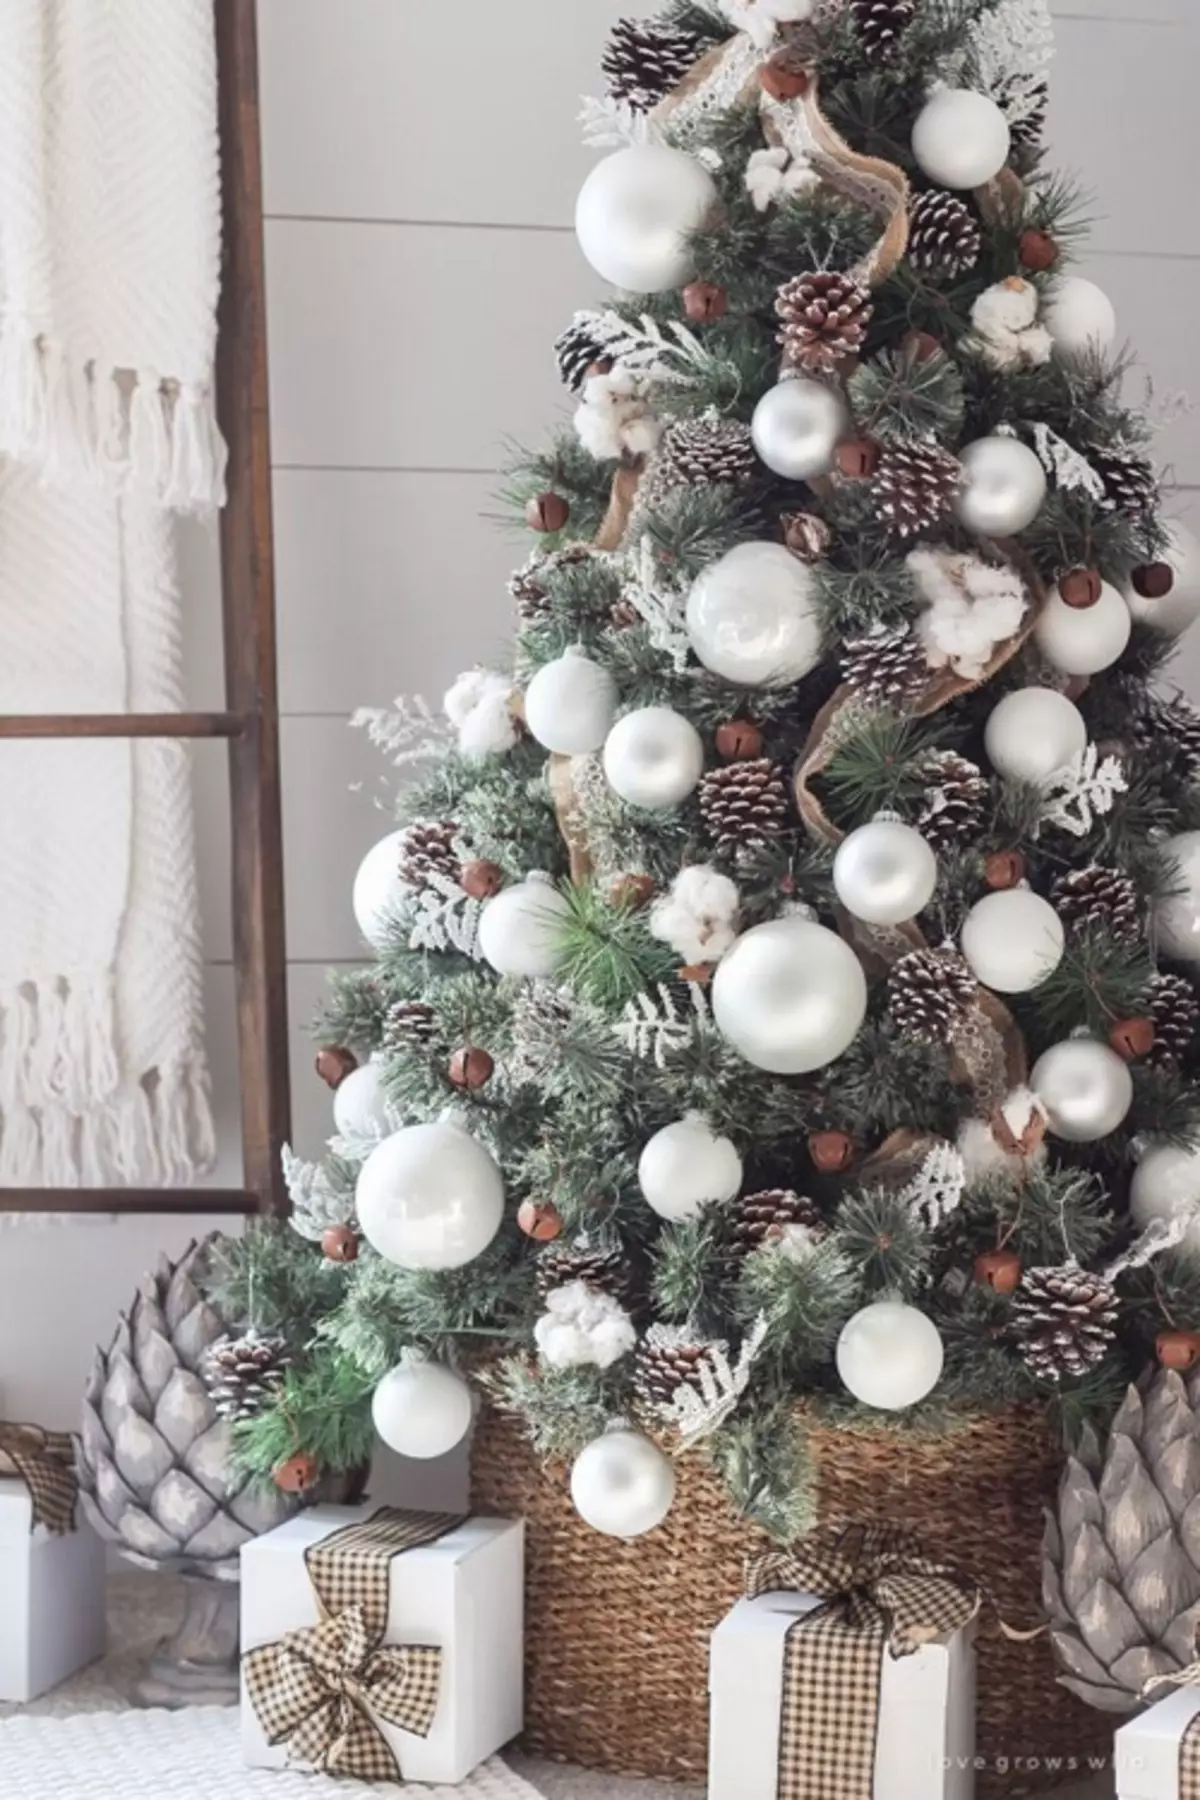 Ziemassvētku eglīšu apdare ar lokiem (35 fotogrāfijas): loki ar bumbiņām un ziediem, ar lentēm un pērlēm, skaisti rotā Ziemassvētku eglīti ar sarkaniem un baltām lokiem 7640_31